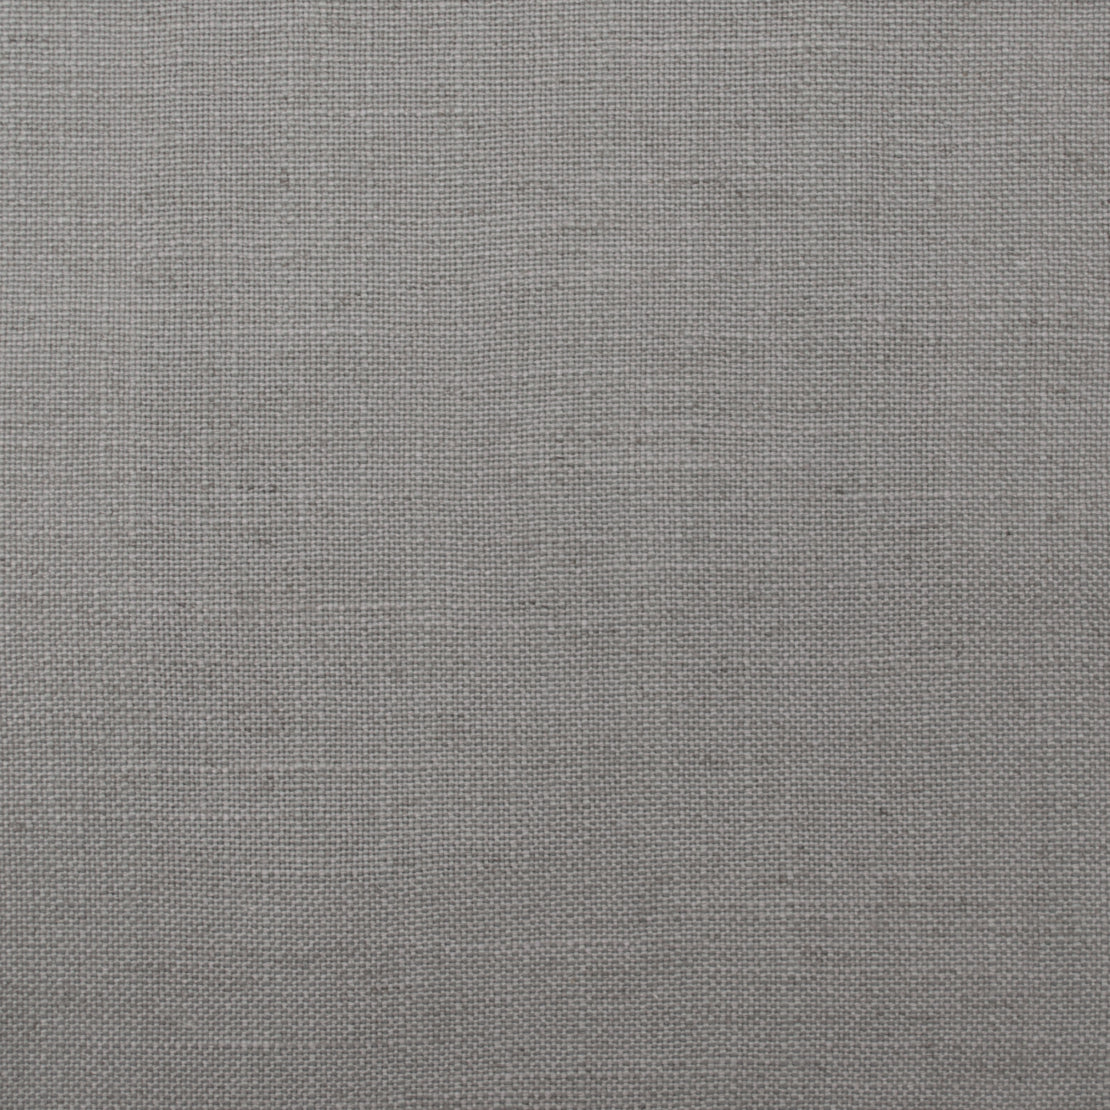 Purchase Mag FabricPattern# 11231 pattern name Hampton Lemur